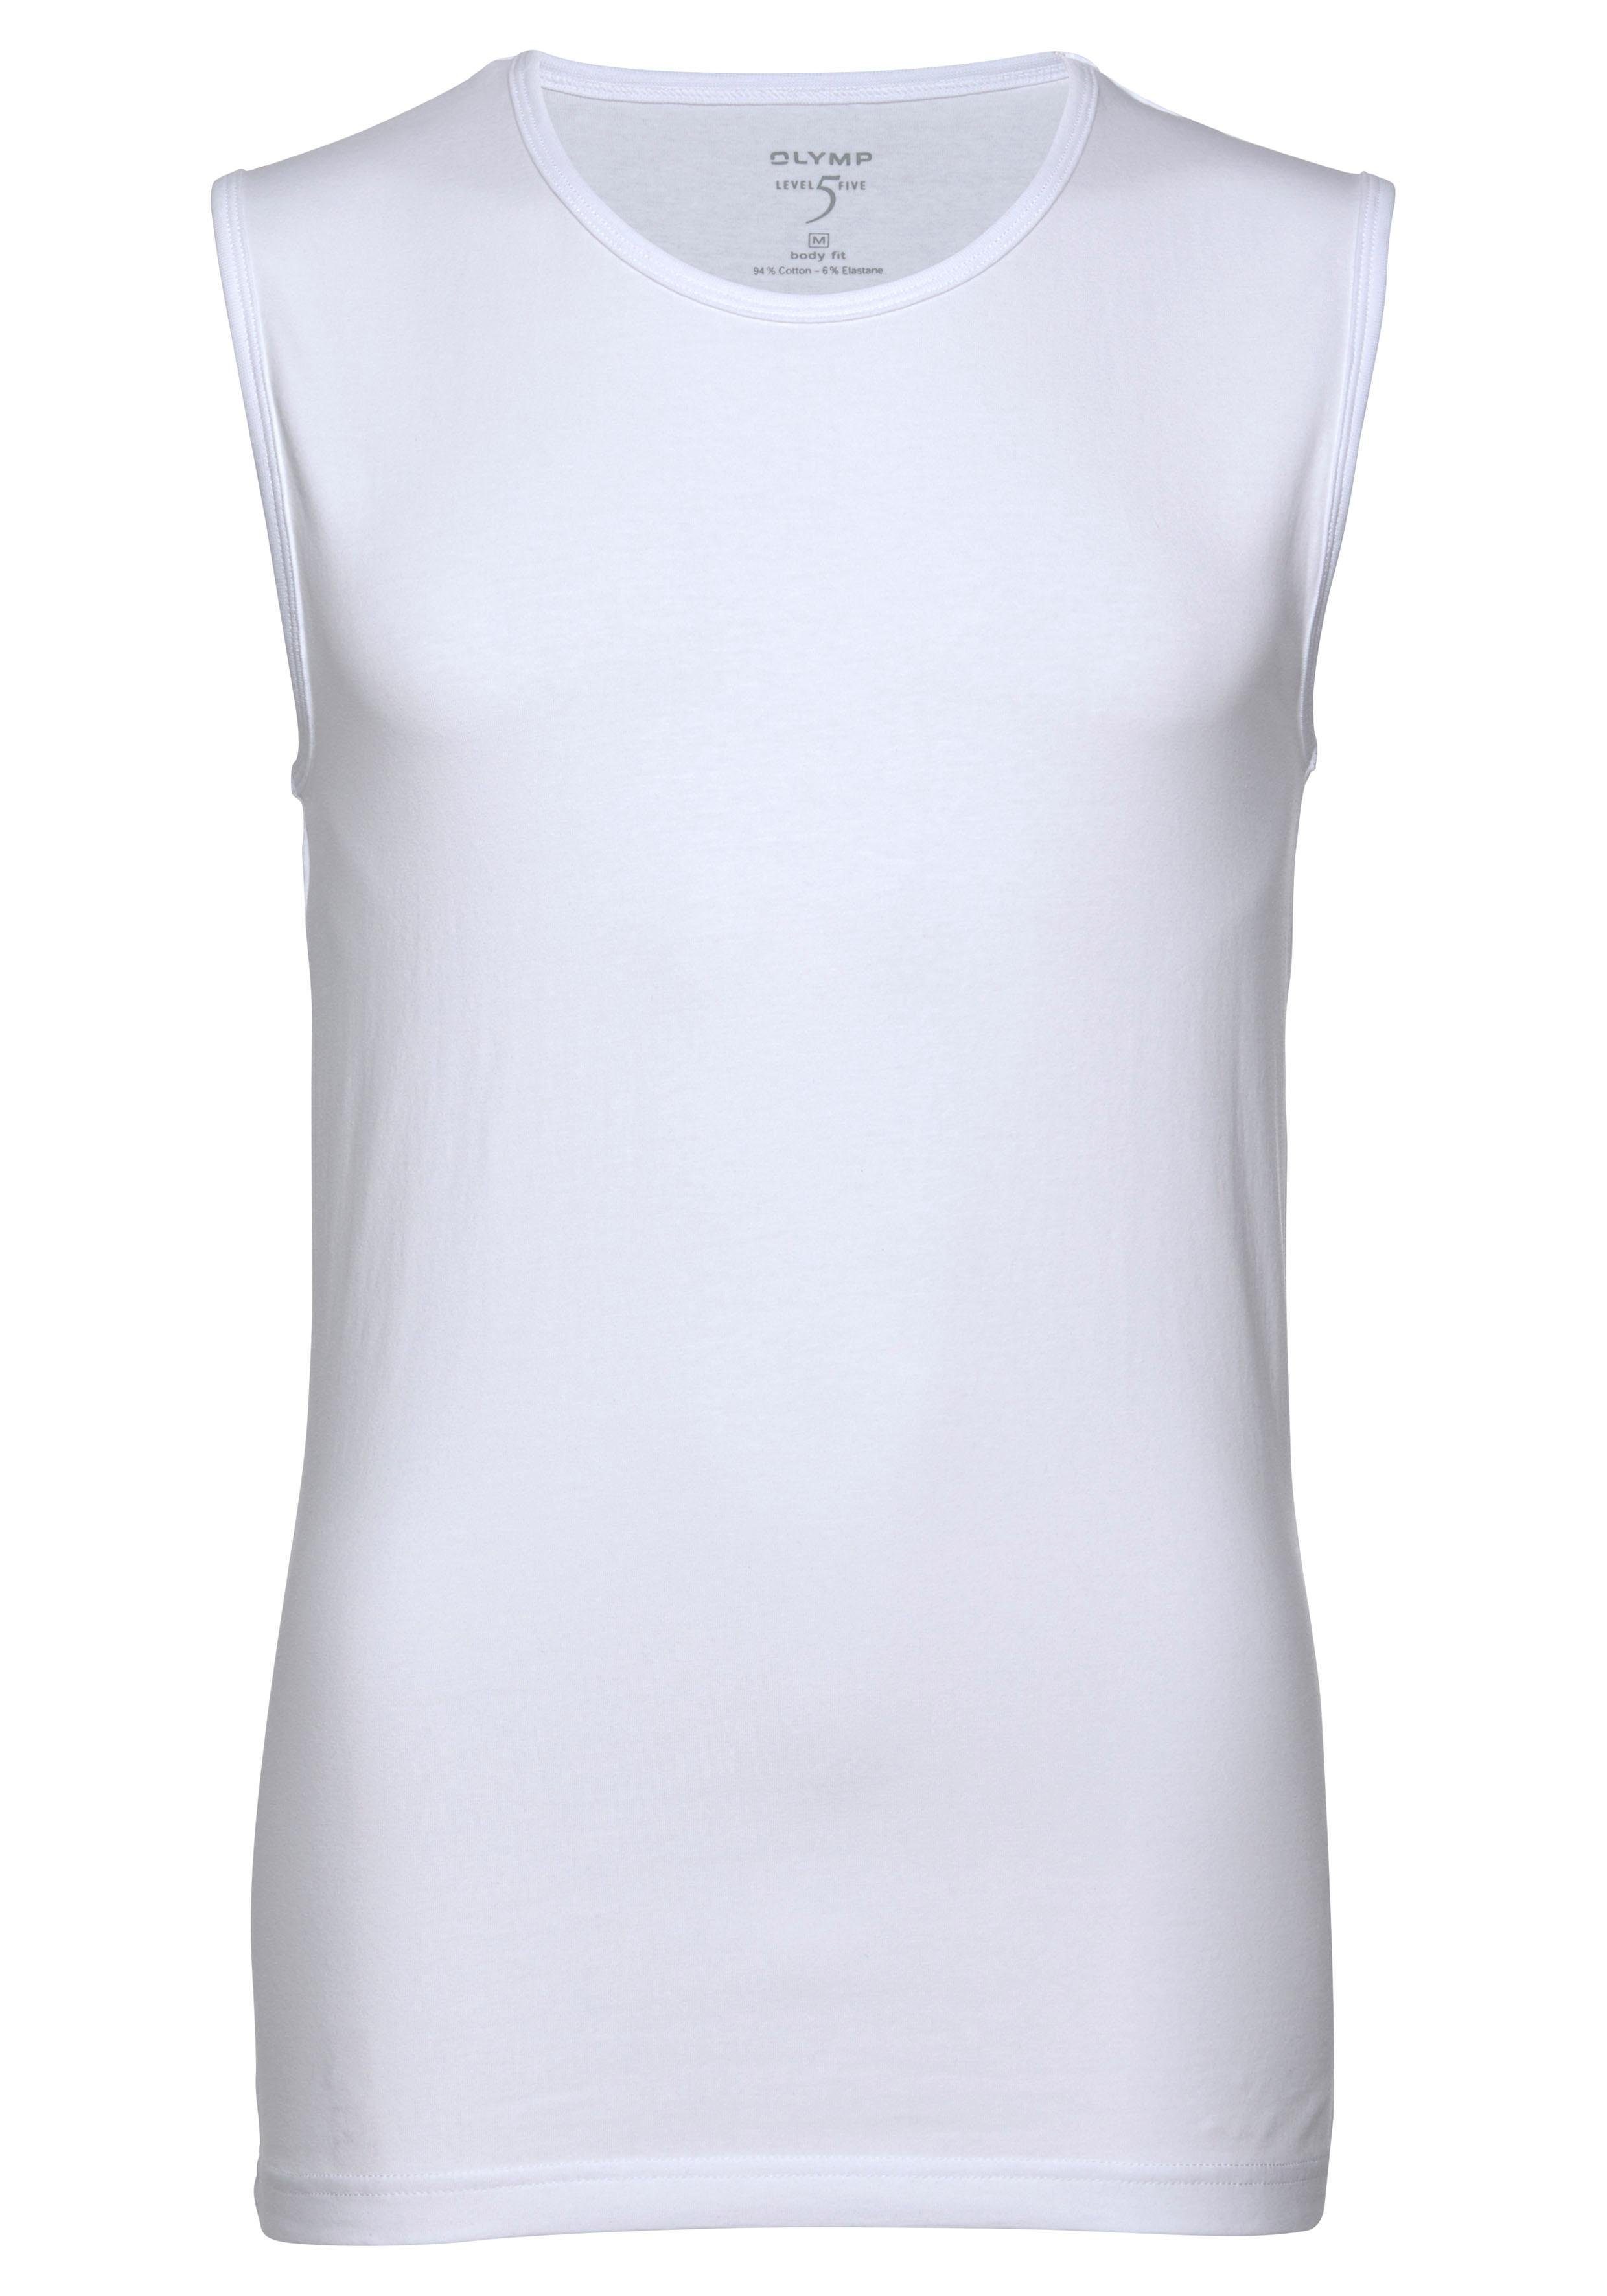 OLYMP T-Shirt Level Five body zum Ideal weiß fit Unterziehen Rundhalsausschnitt